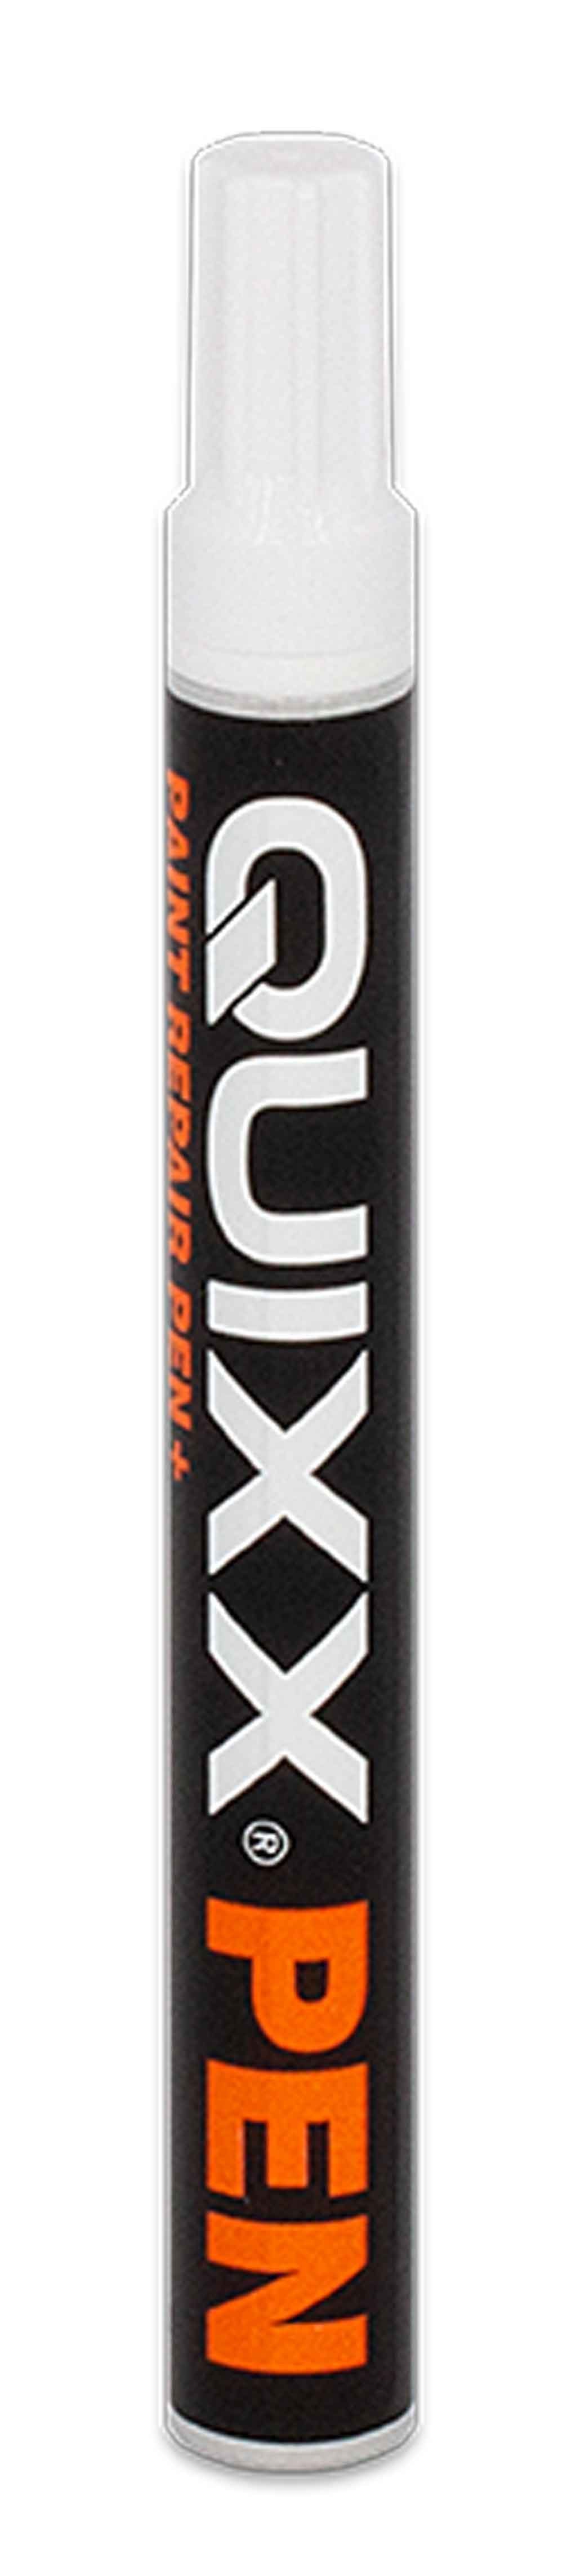 50255 Quixx Reparatur-Set QUIXX Reparatur Lack Stift